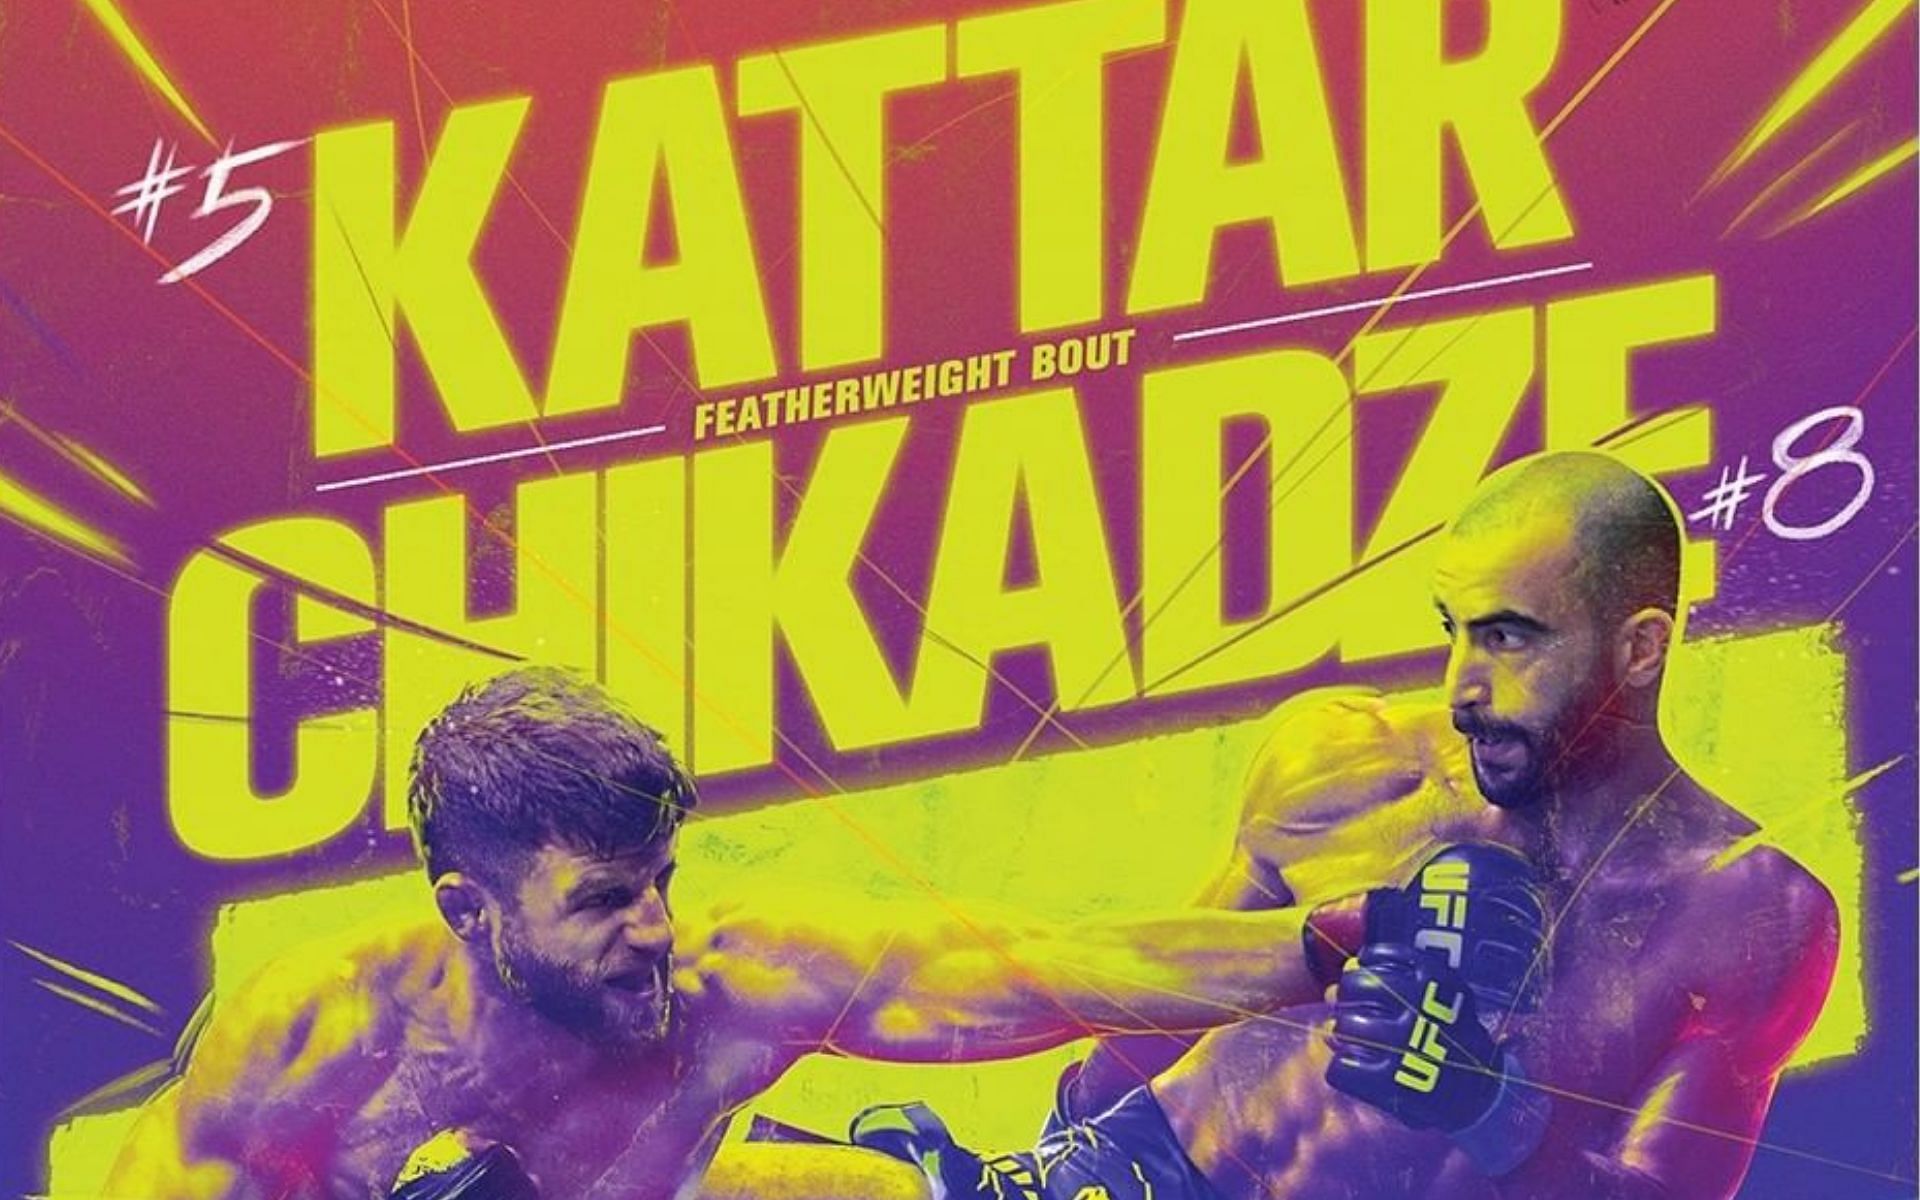 UFC Fight Night Kattar vs